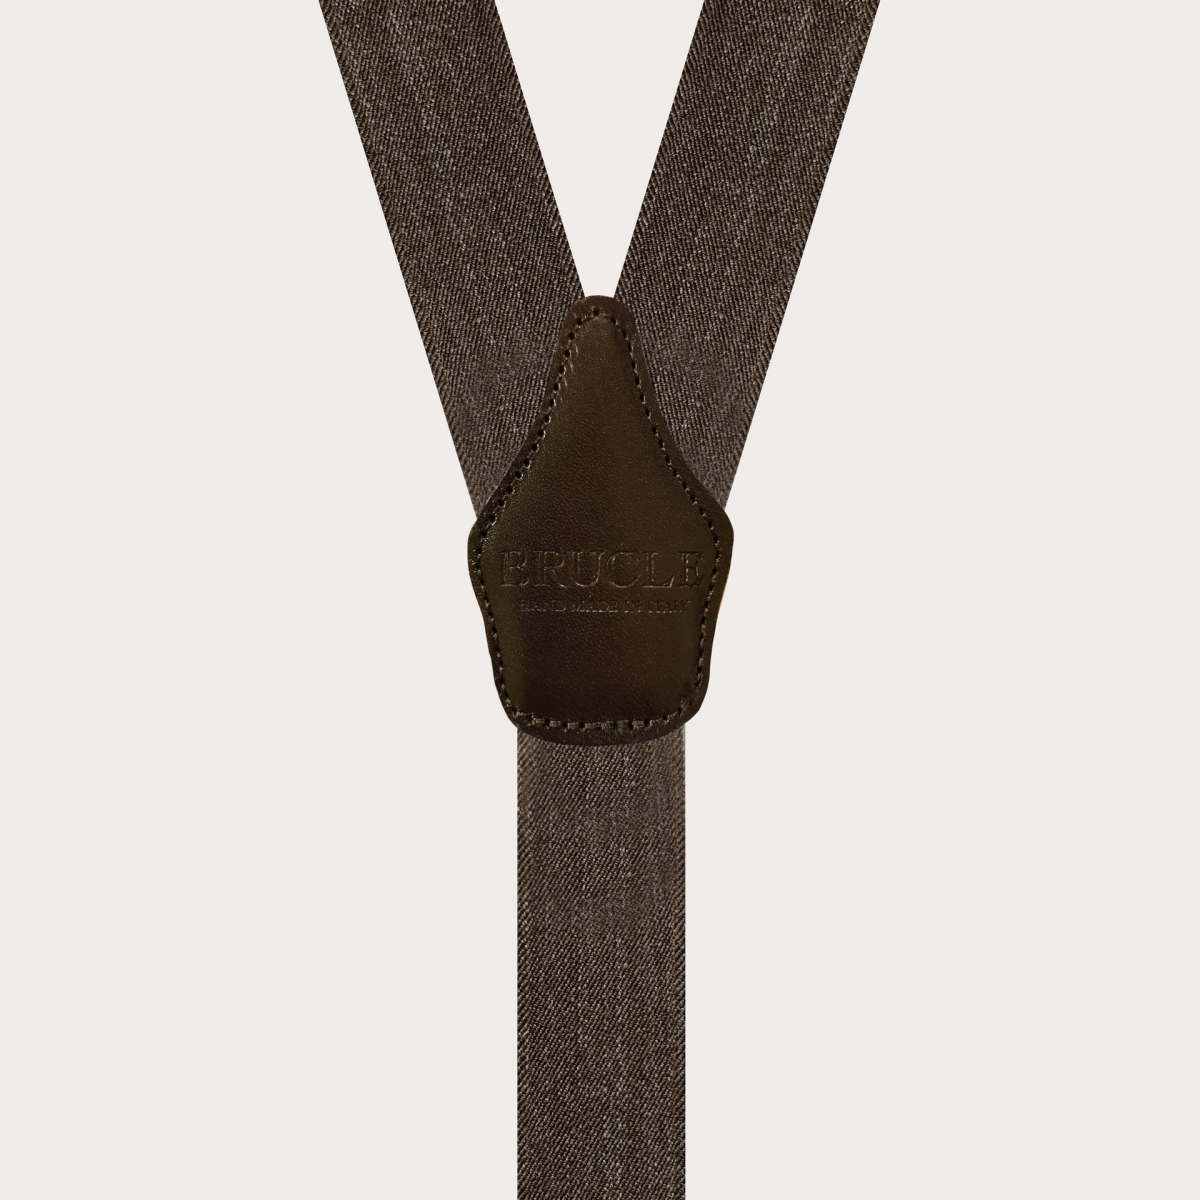 BRUCLE Double use elastic suspenders in brown denim